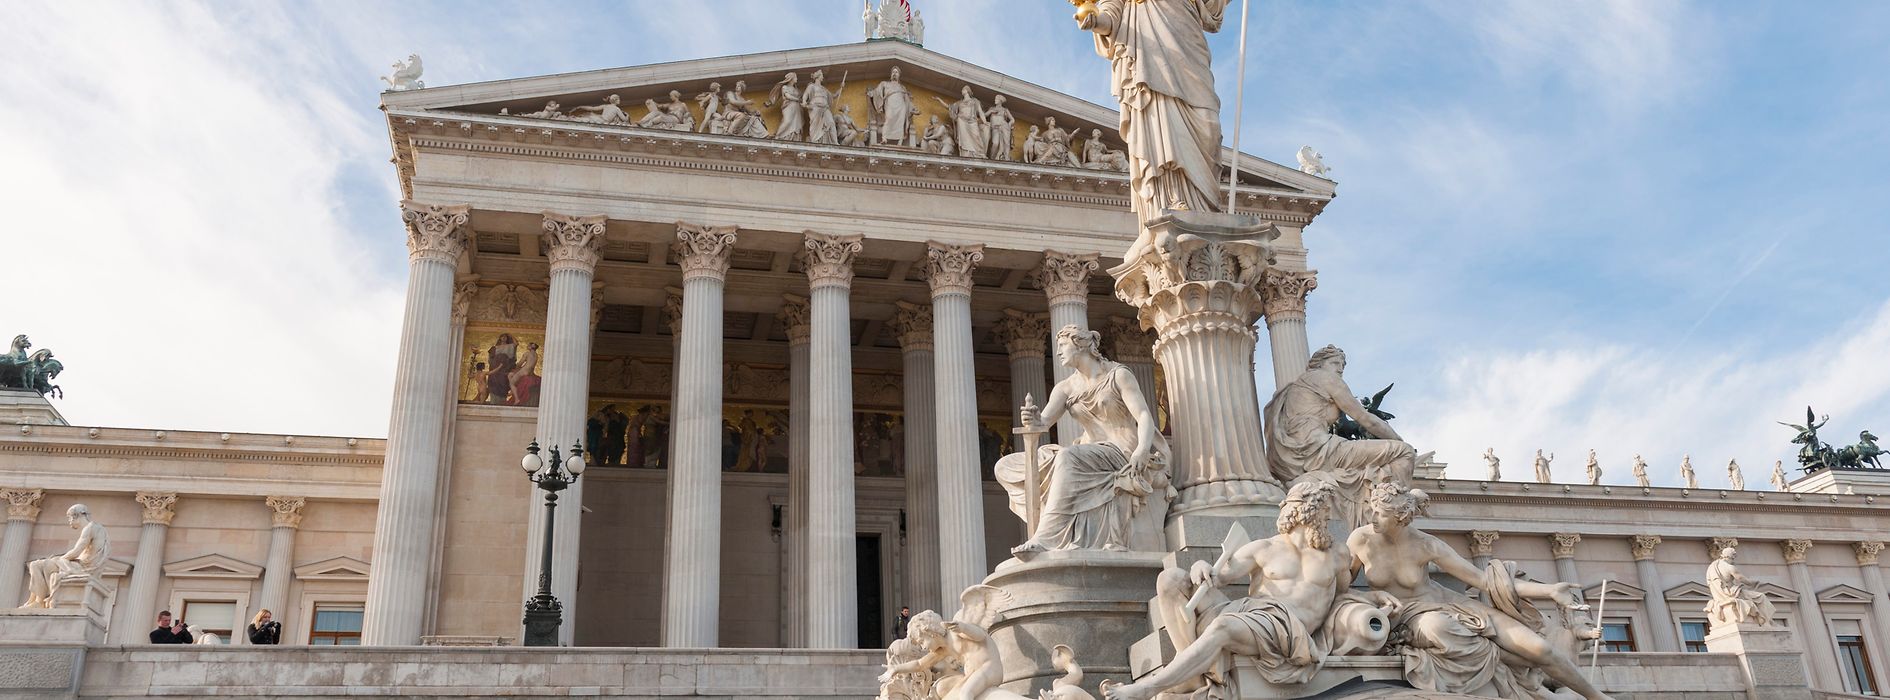 Esterno del Parlamento con la statua di Pallade Atena in primo piano 